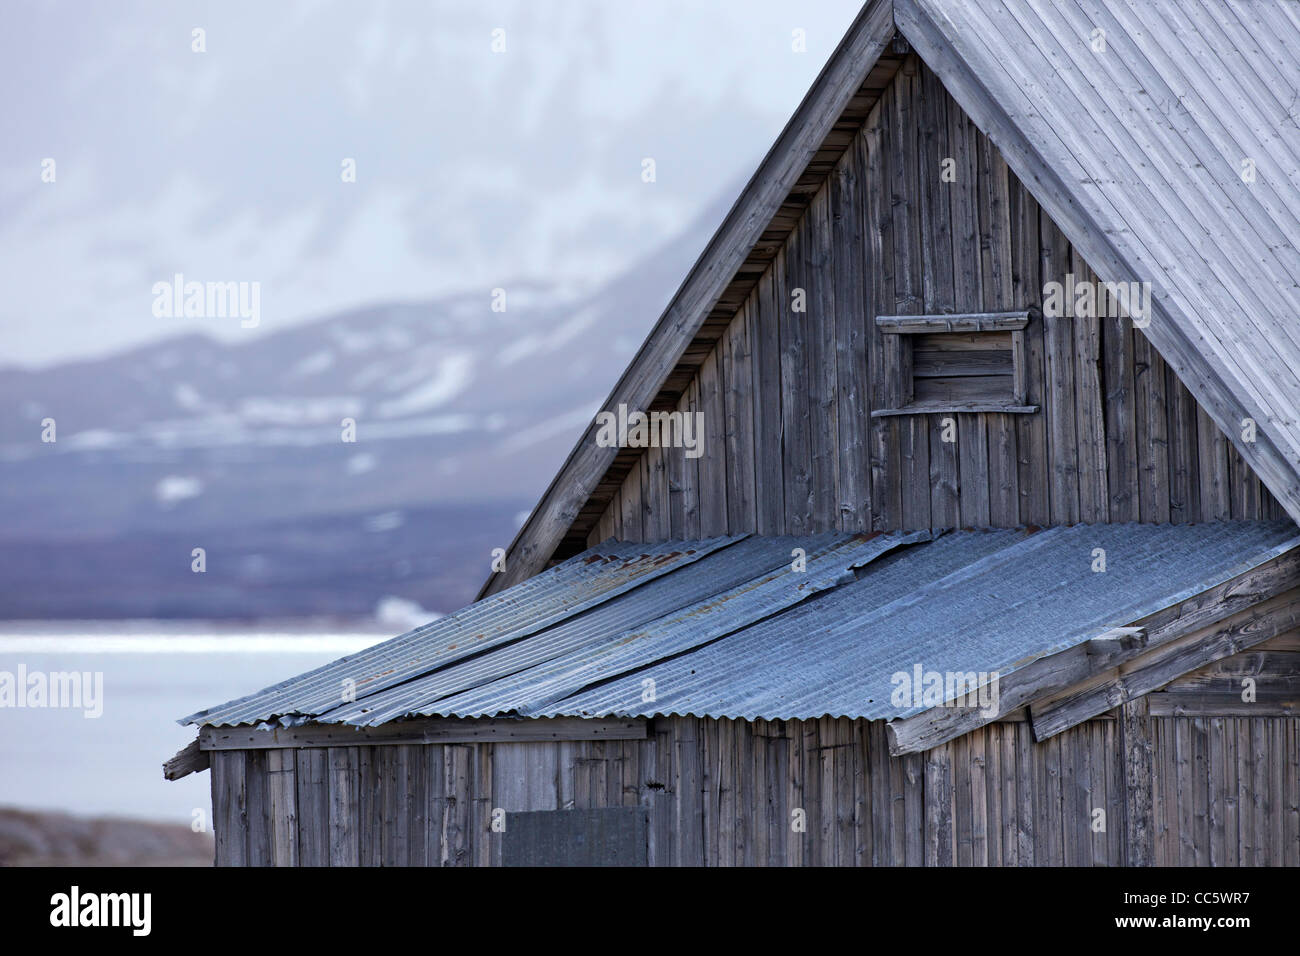 La cabane de trappeur en bois ancien, Camp Mansfield, Blomstrandhalvoya, Spitzberg, Svalbard, Norvège, Europe Banque D'Images